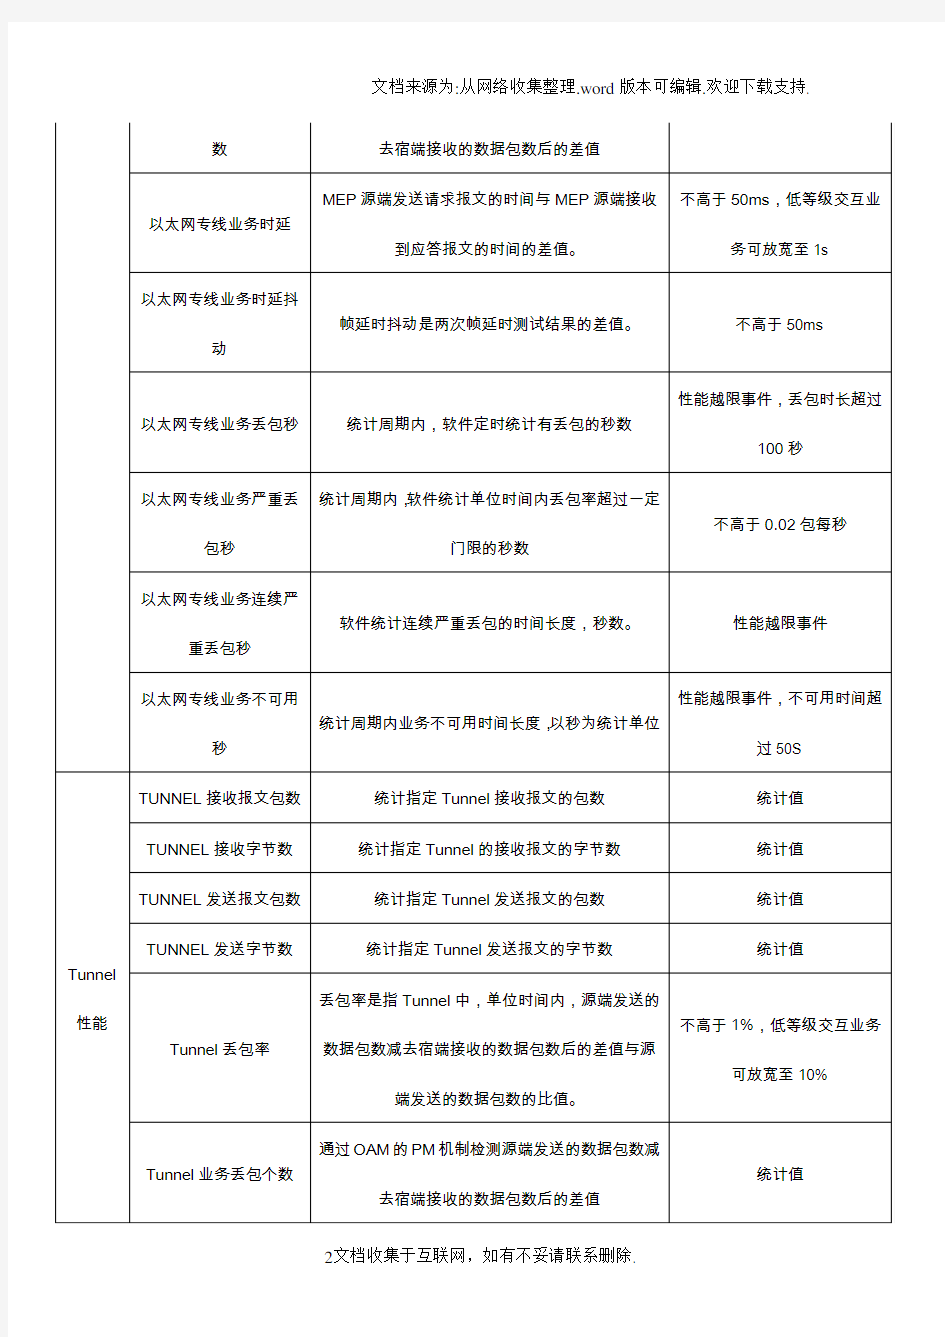 9中国移动网络全业务指标体系